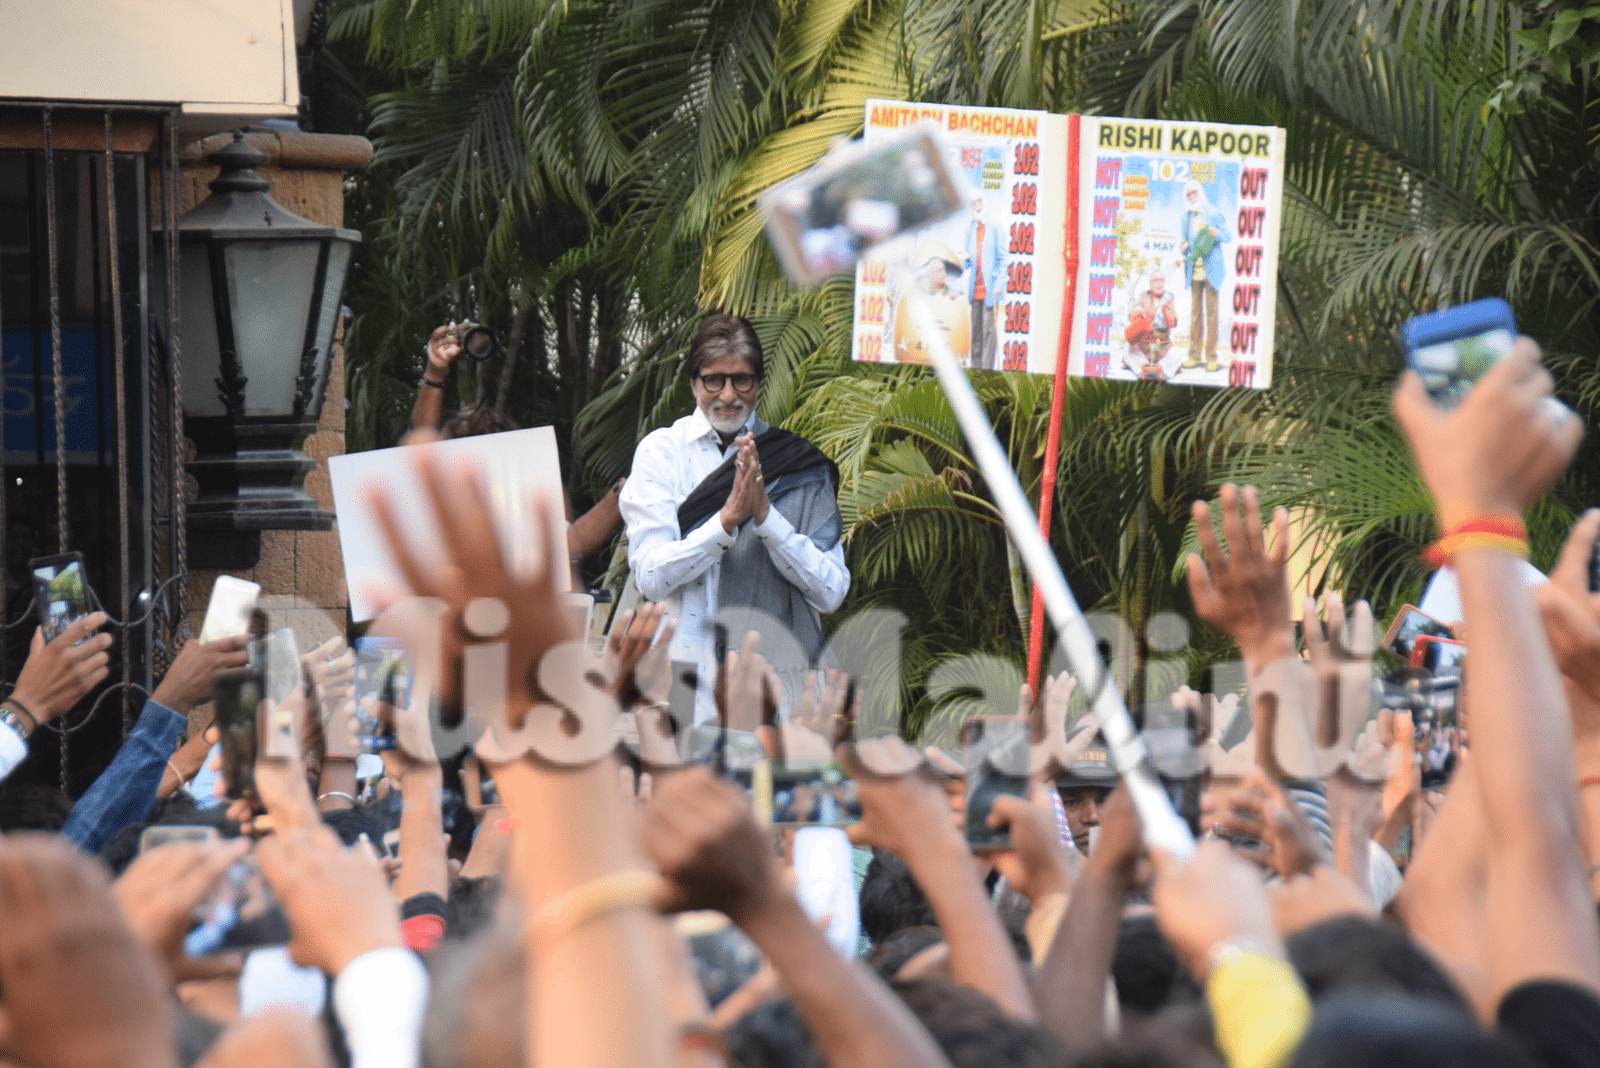 Amitabh Bachchan greeting fans